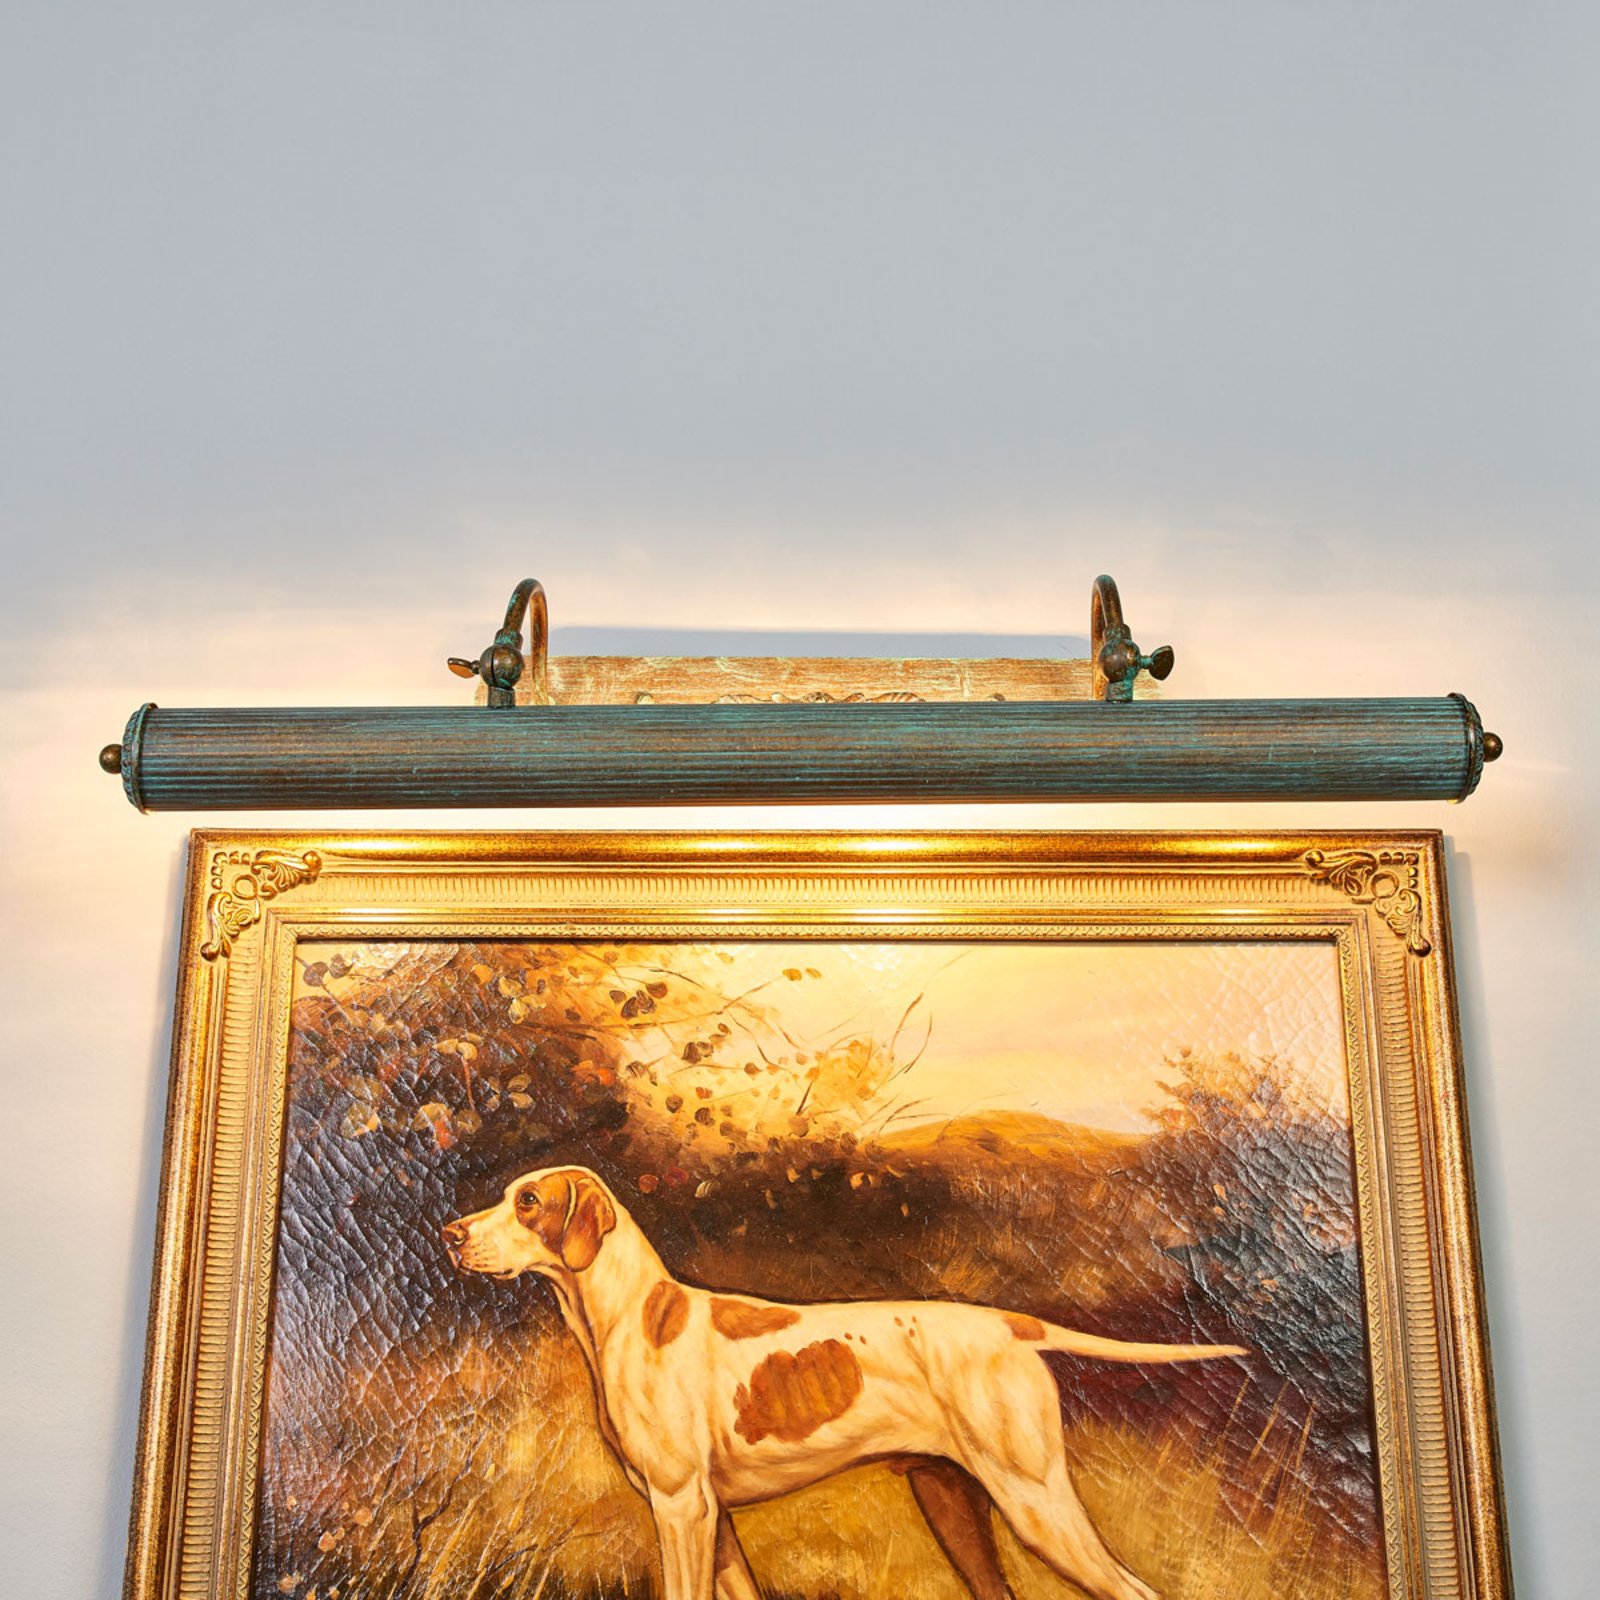 Beno patinás kinézetű képlámpa, 72 cm